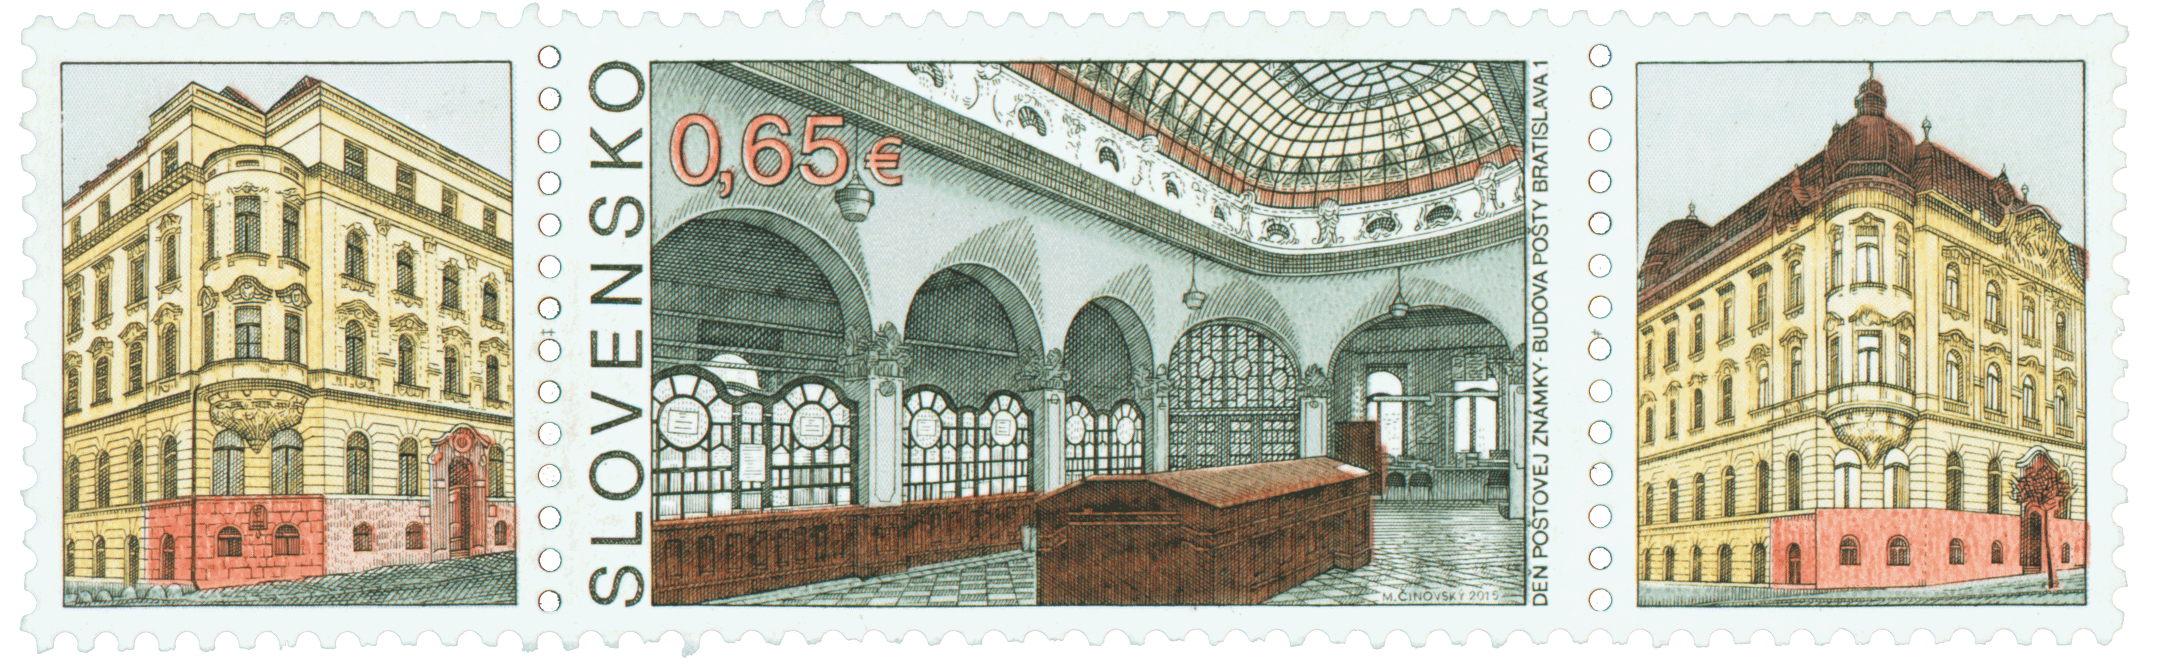 603 - Deň poštovej známky: Budova pošty Bratislava 1